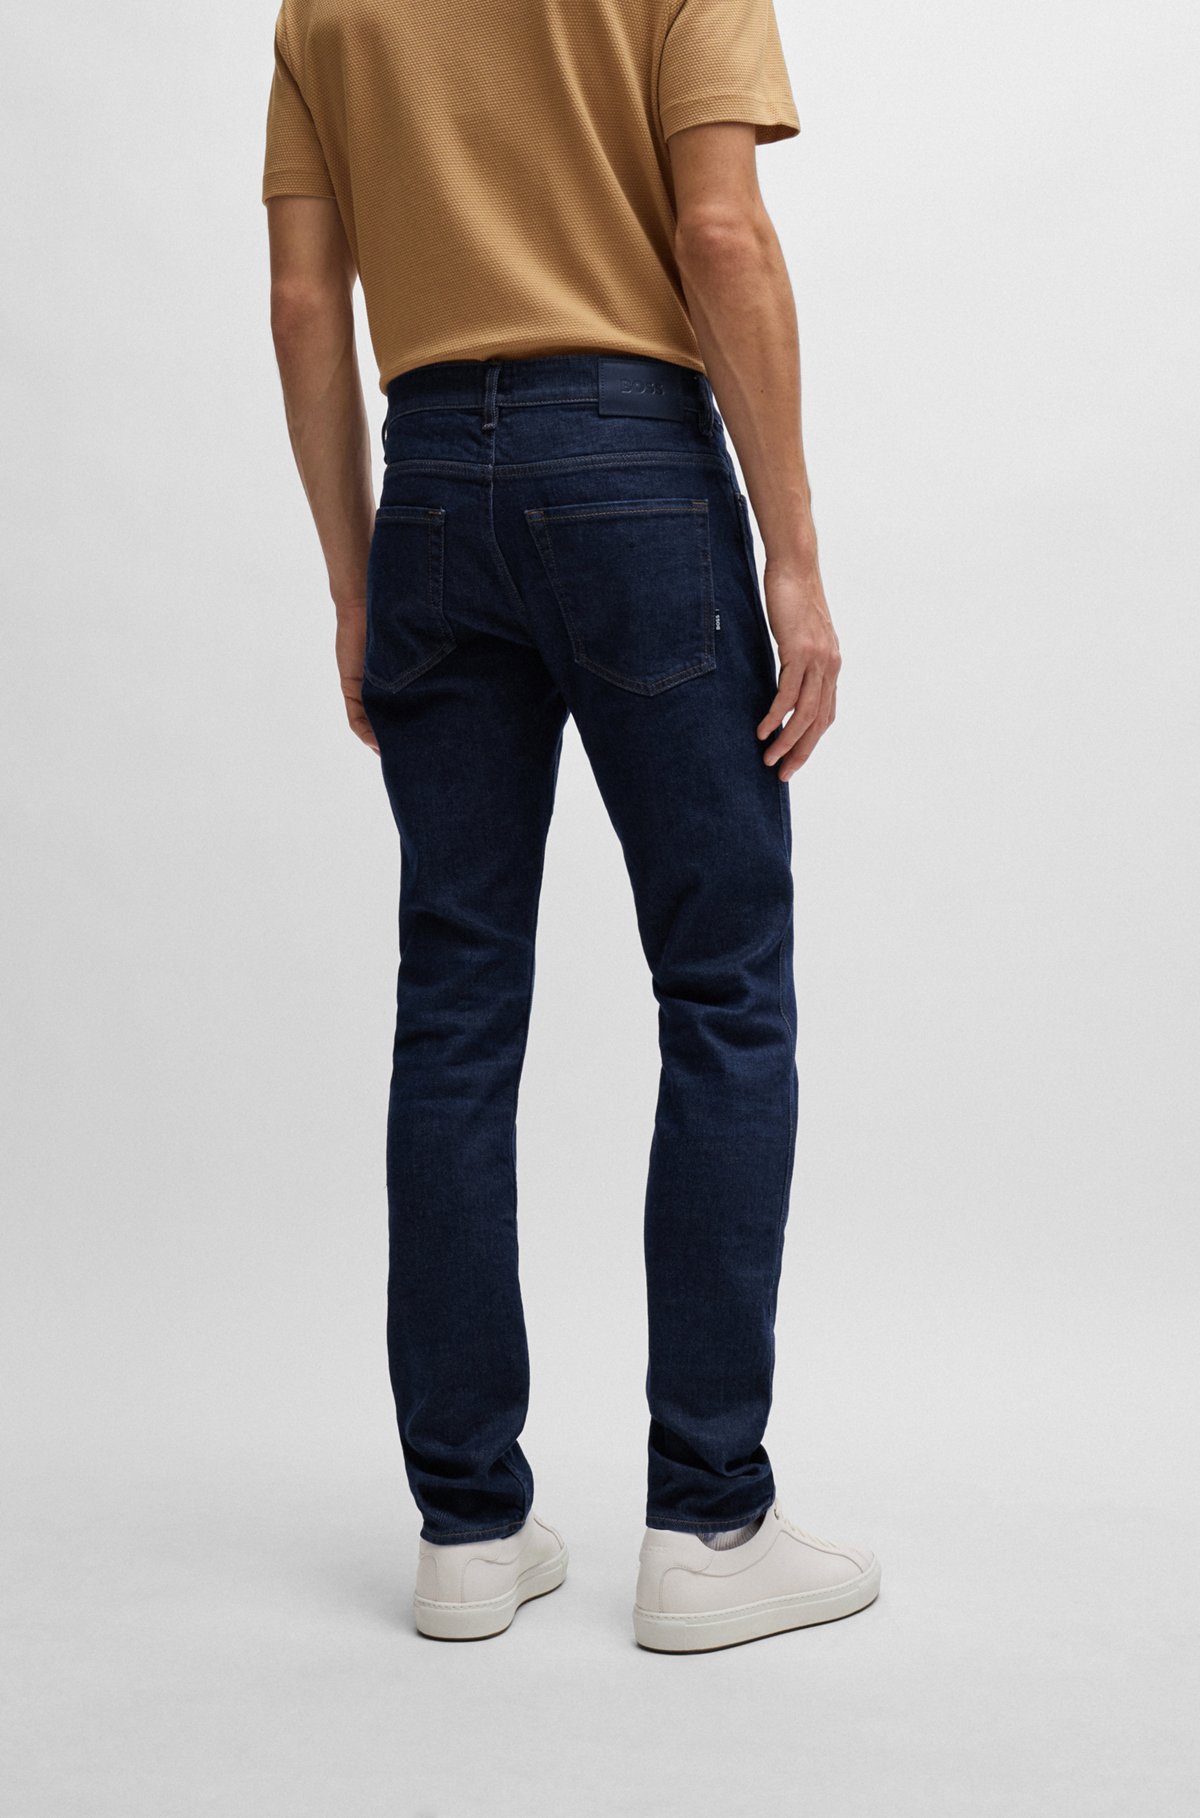 Som svar på studie fly BOSS - Jeans i slim fit i mørkeblå denim med behagelig stræk